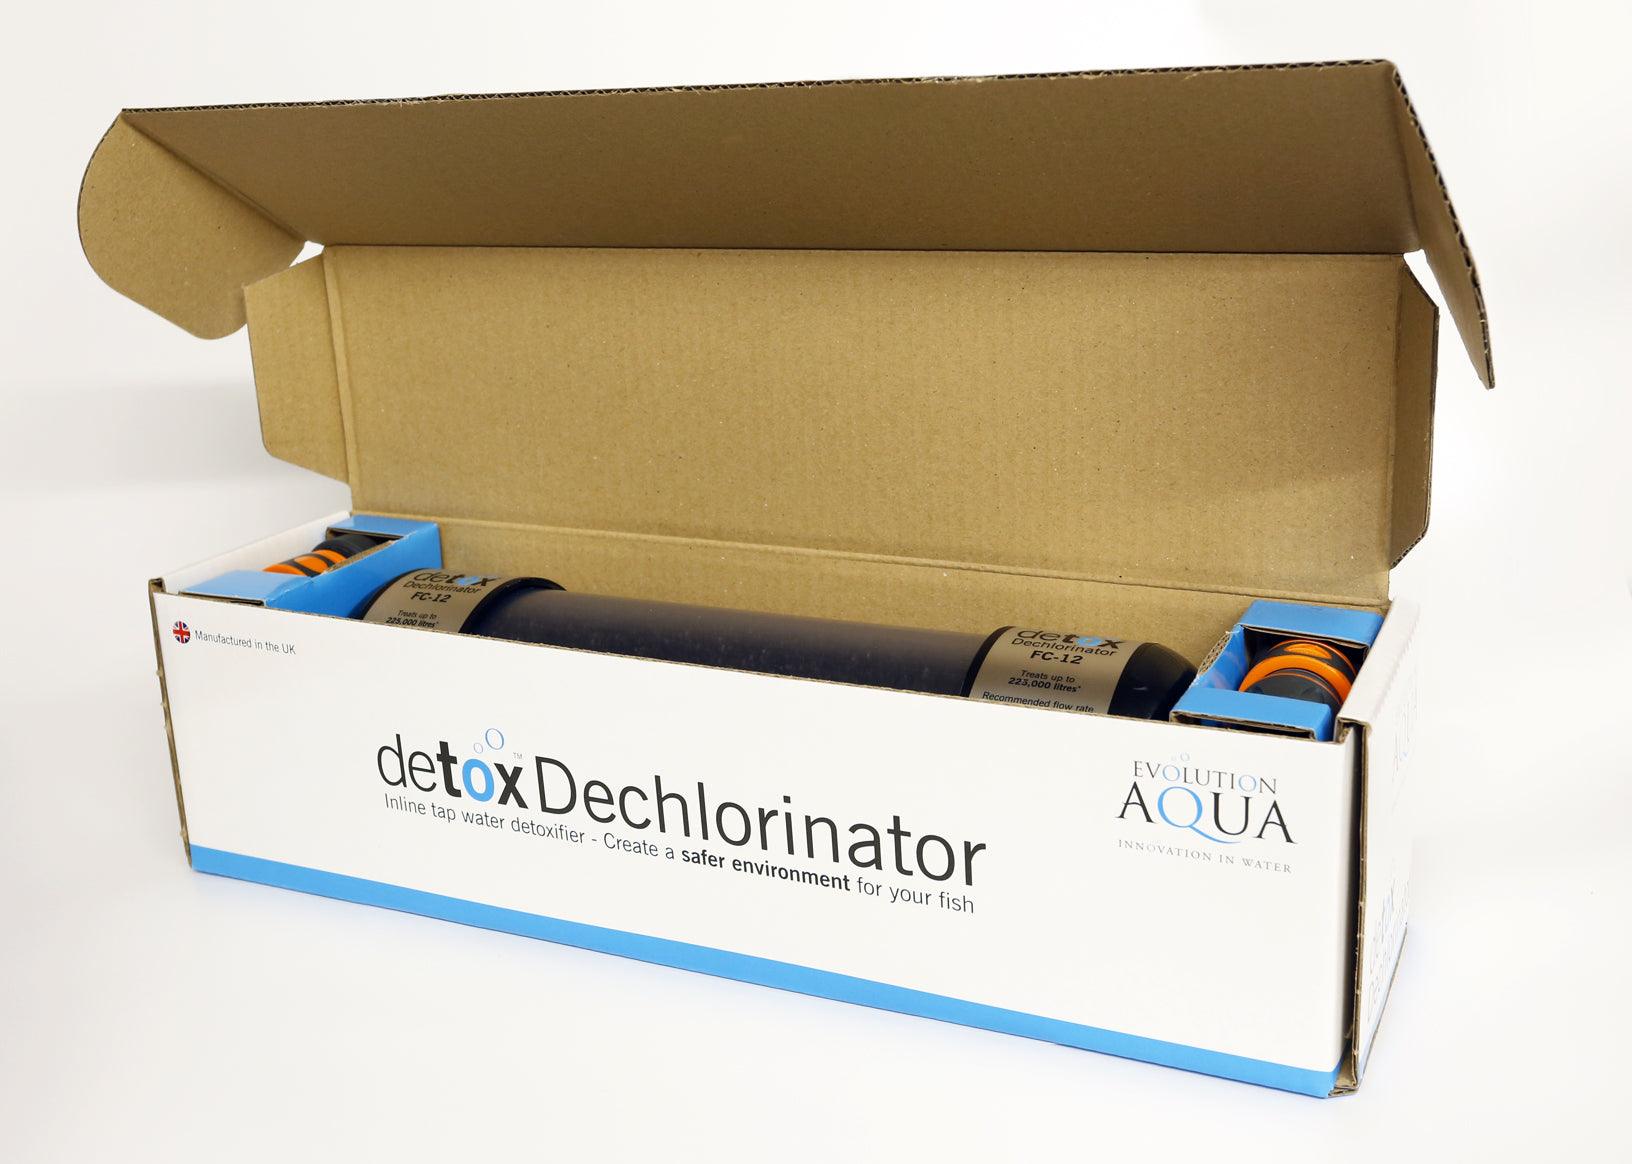 Evolution Aqua Detox Dechlorinator - Play It Koi